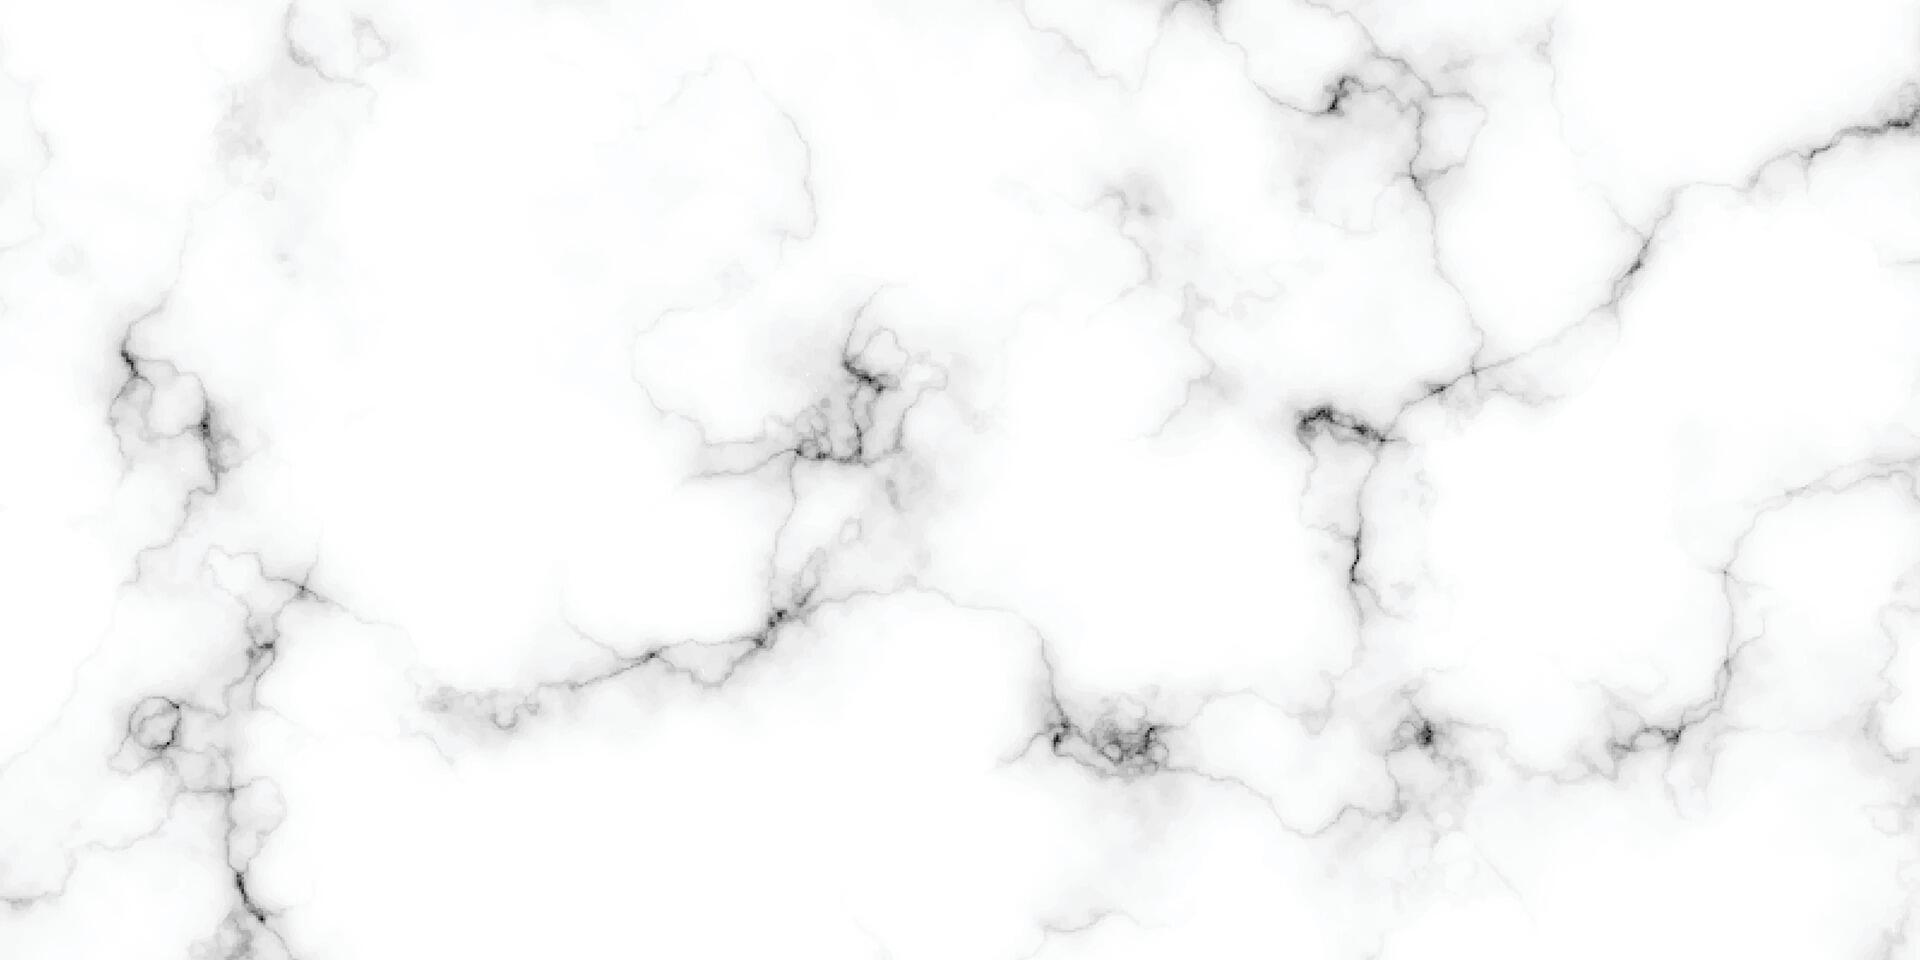 Panorama- Weiß Marmor Stein Textur. Weiß Marmor Textur Hintergrund. hohe Auflösung Weiß carrara Marmor Stein Textur. schwarz Riss Muster mit Marmor Textur. vektor